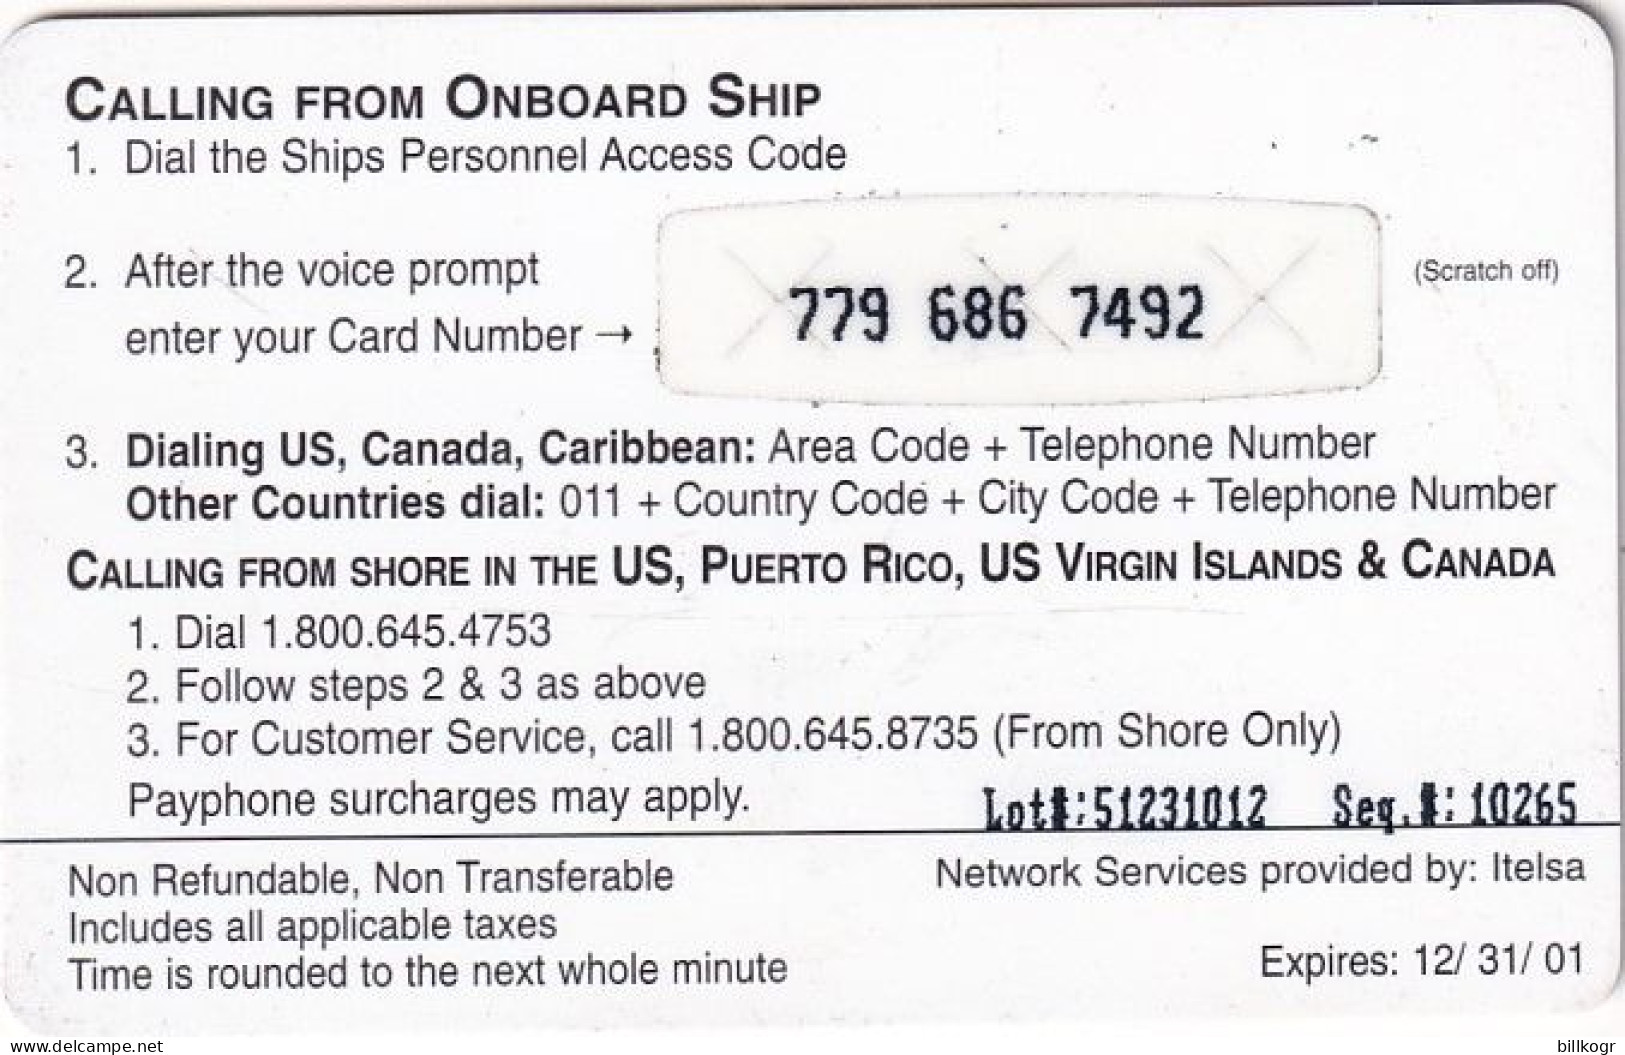 PUERTO RICO - Oceanphone By Itelsa Satellite Prepaid Card $20 Exp.date 31/12/01, Used - Puerto Rico